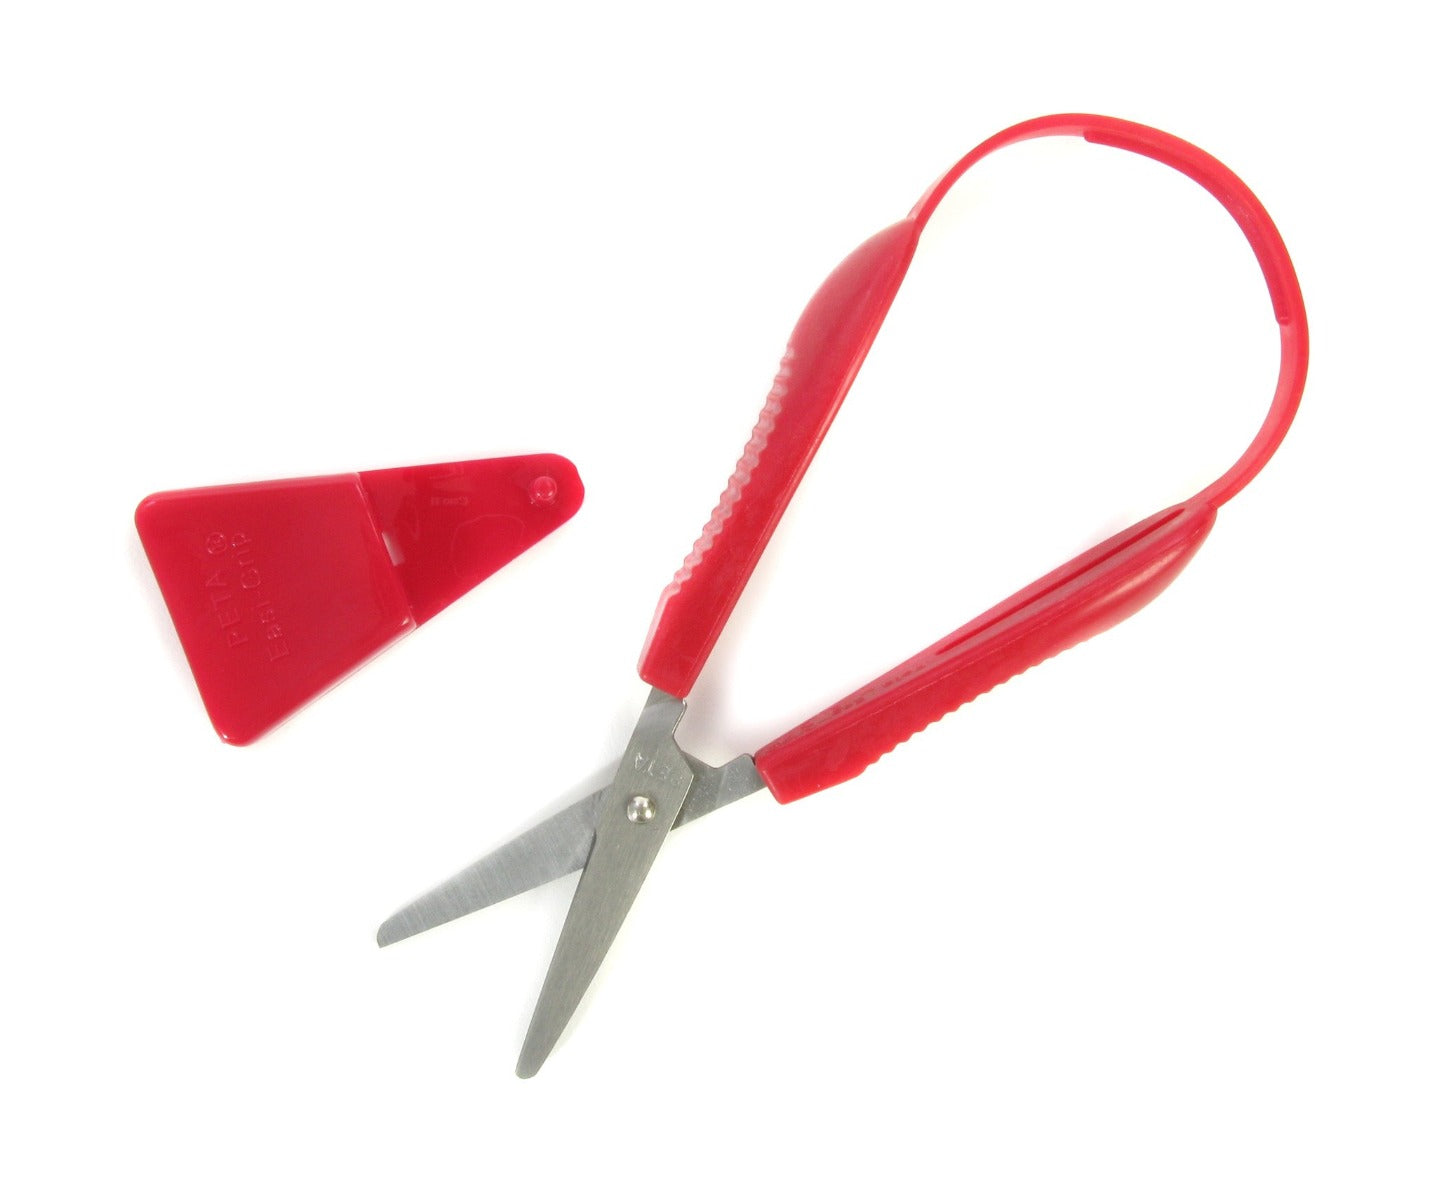 Mini-Easi-Grip Scissors